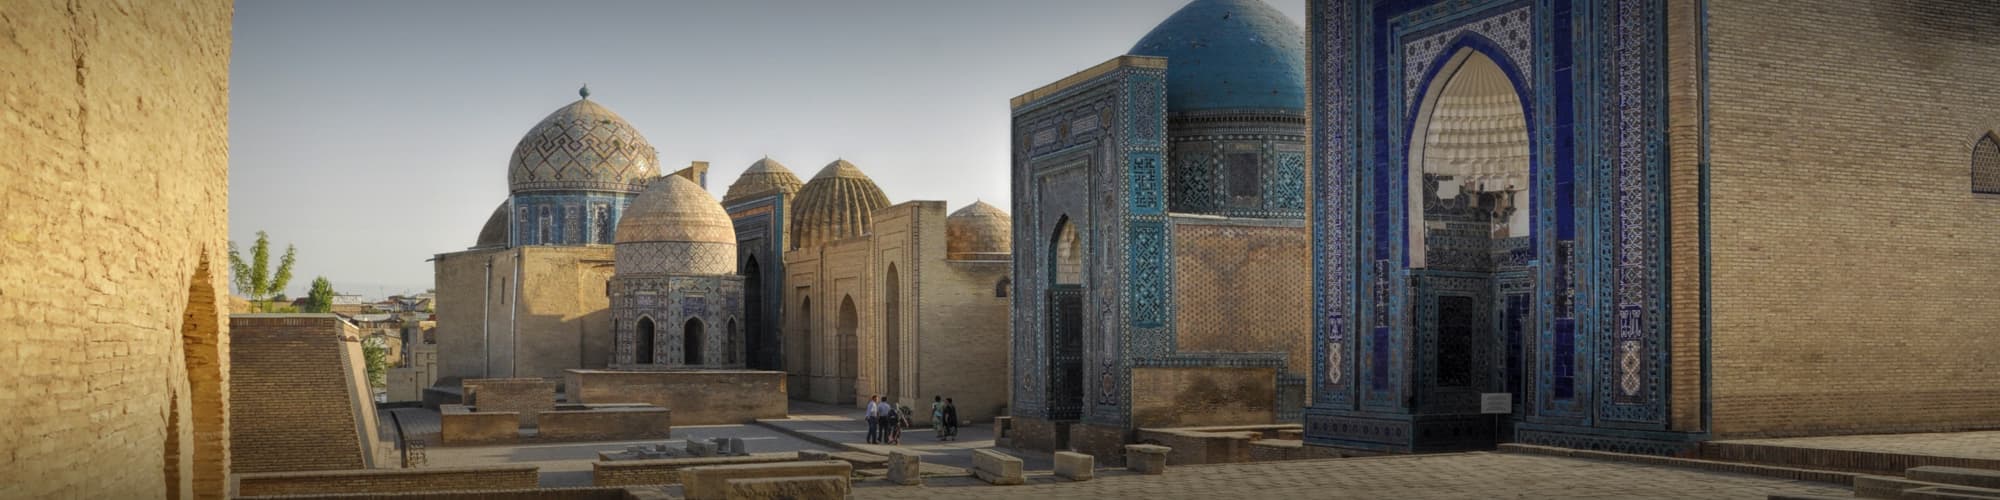 Découverte Ouzbekistan © MisoKnitl/iStock